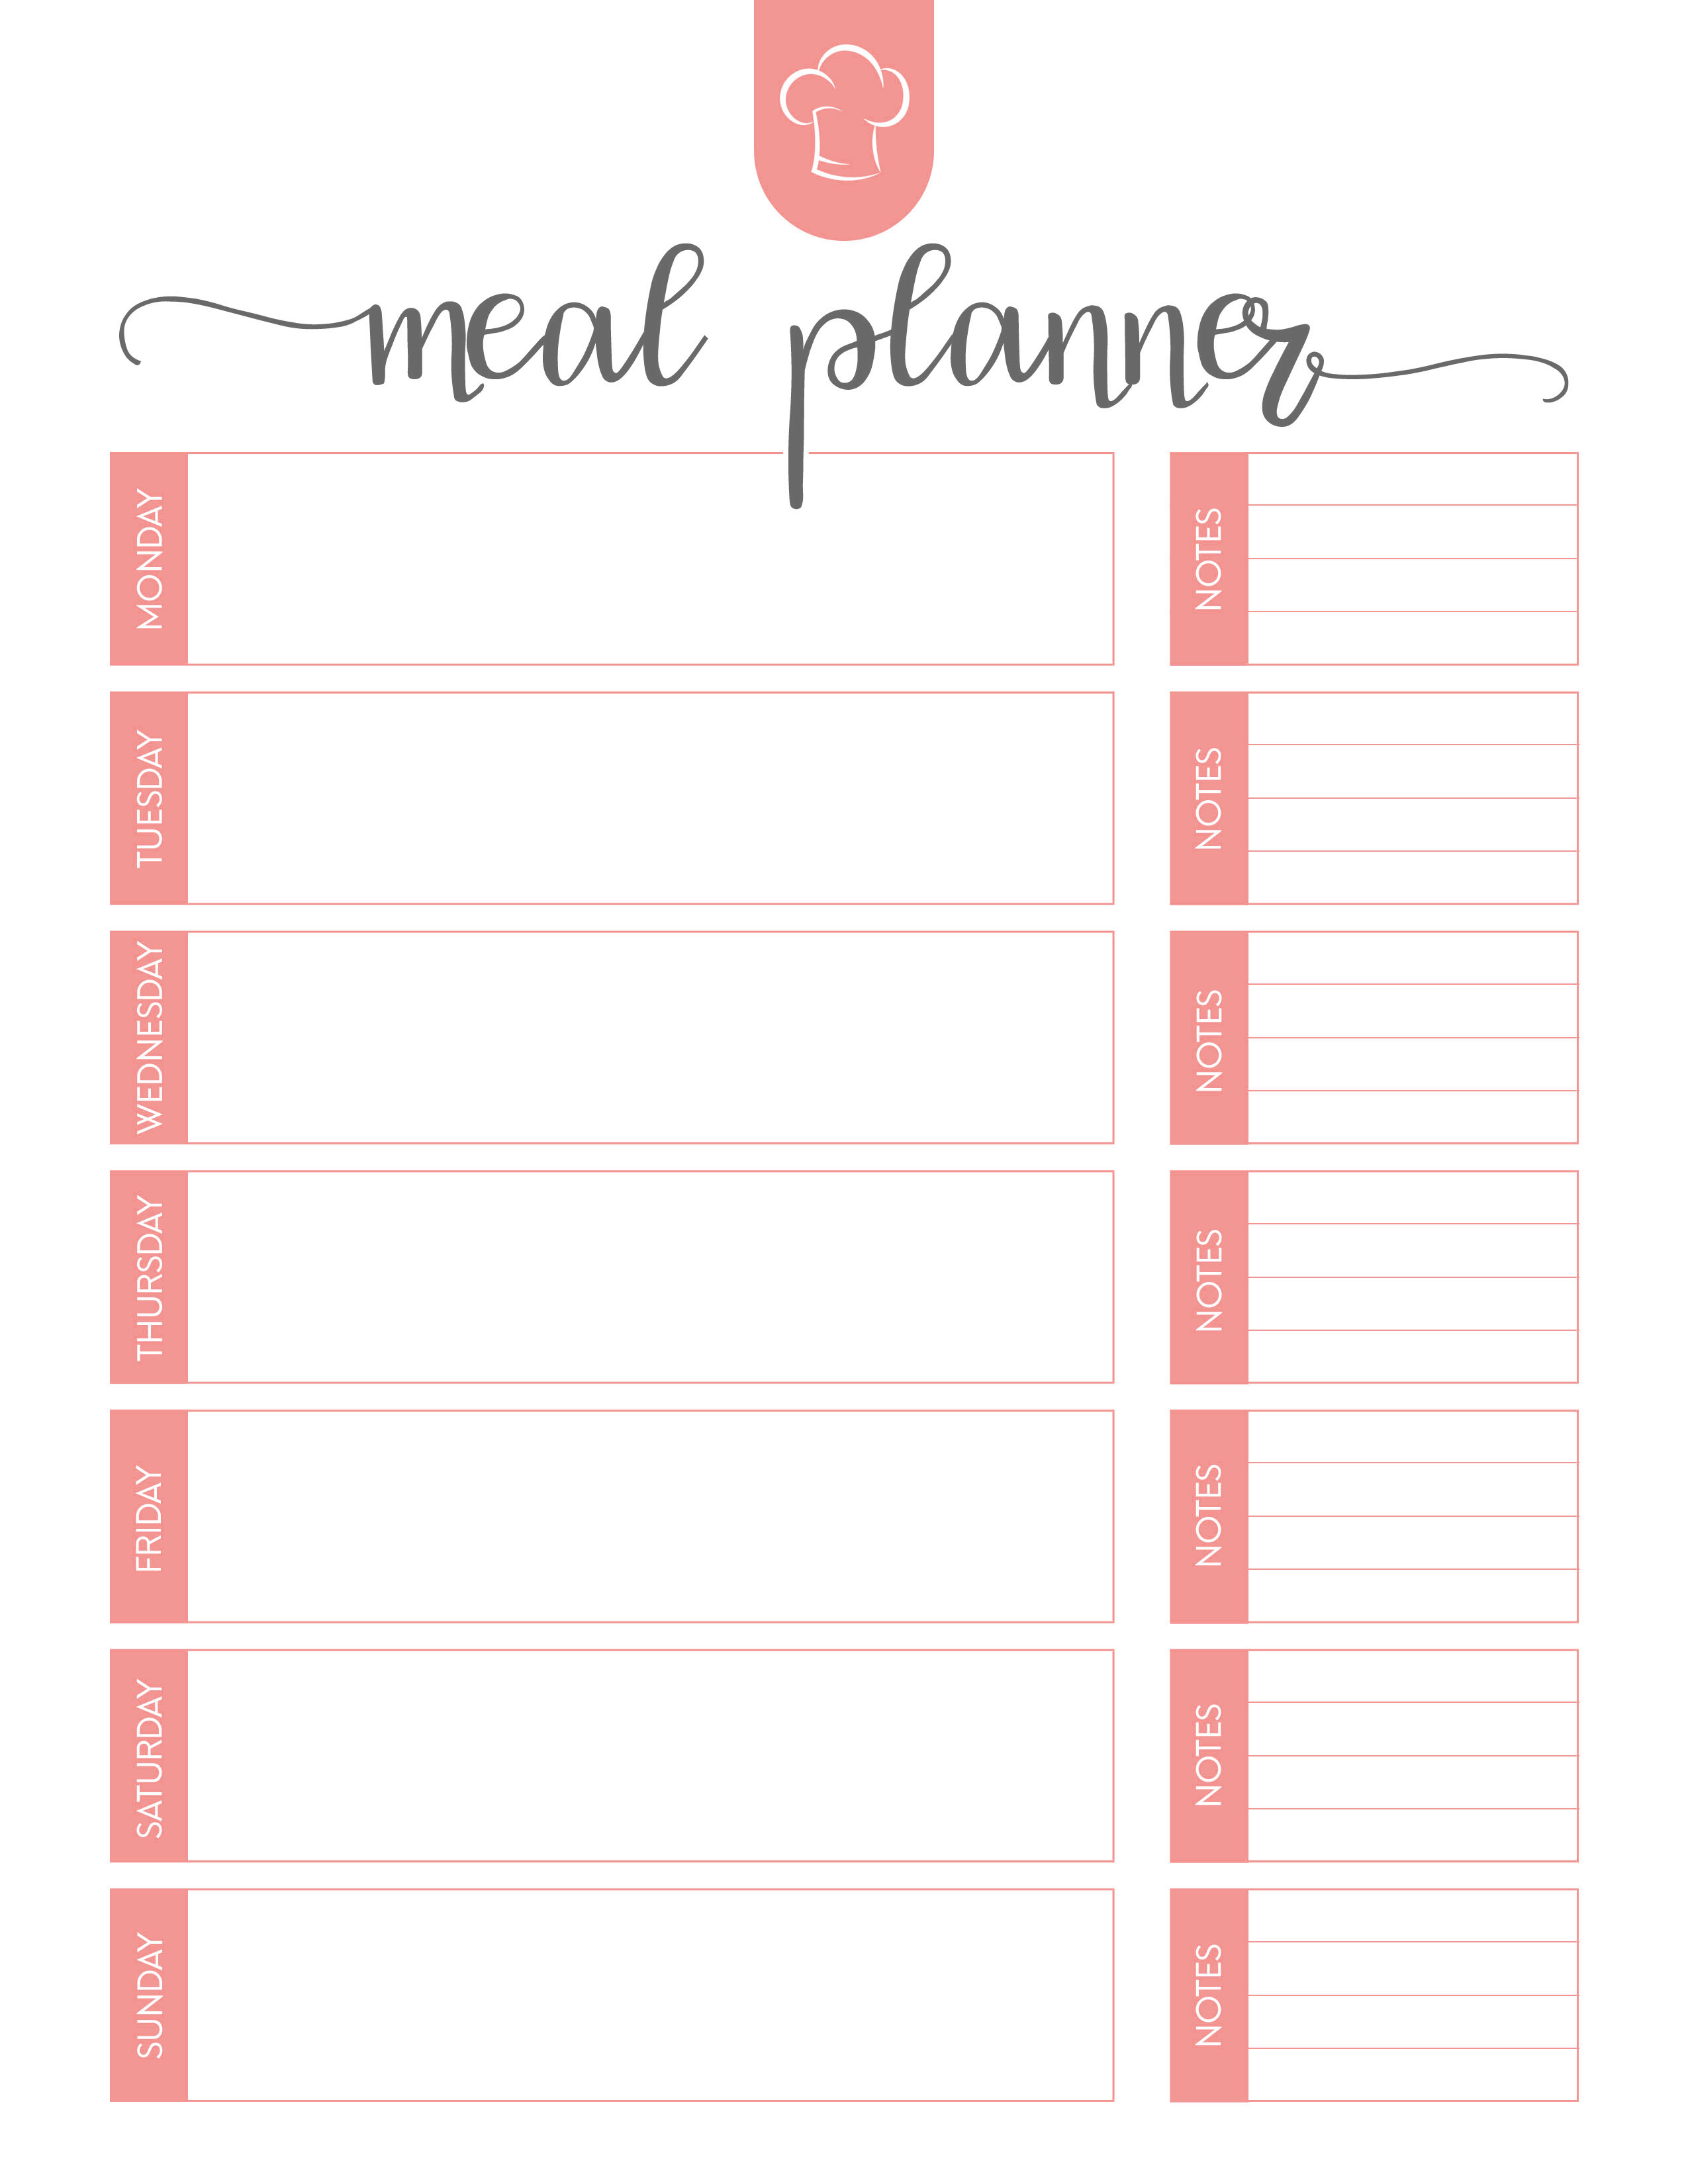 weekly meal planner printables free